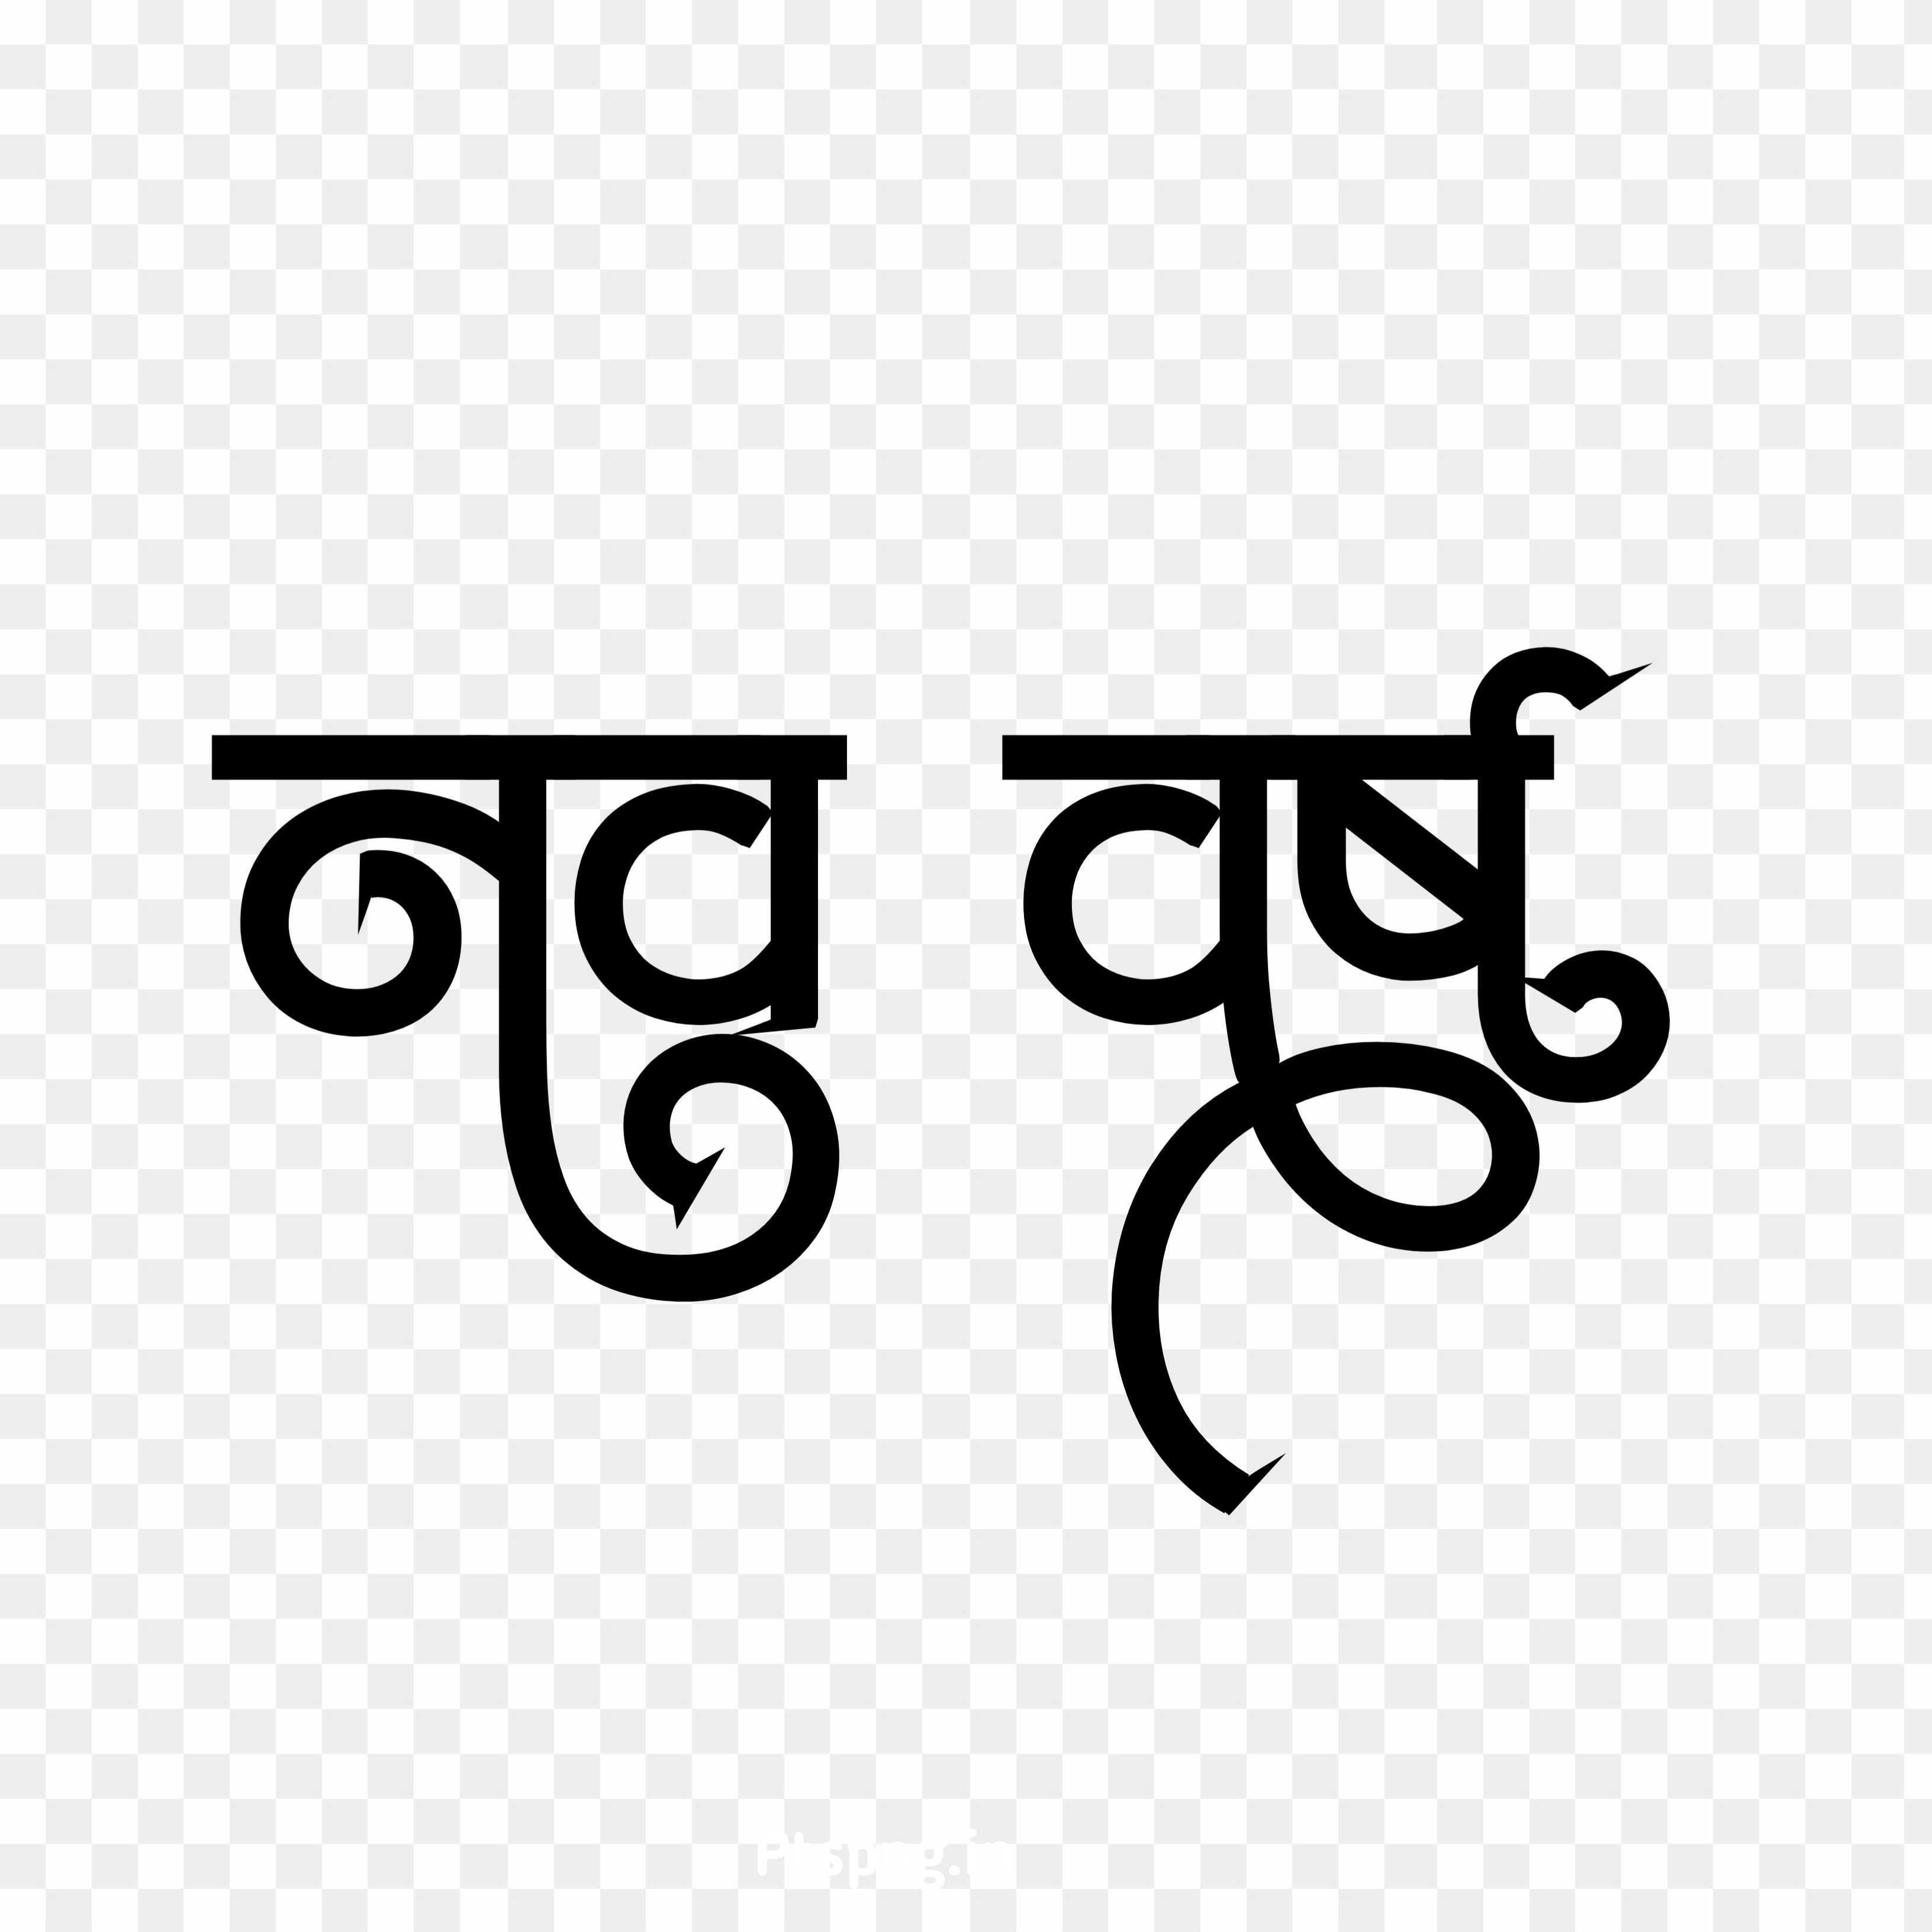 Happy New year nav varsh Hindi text png images 